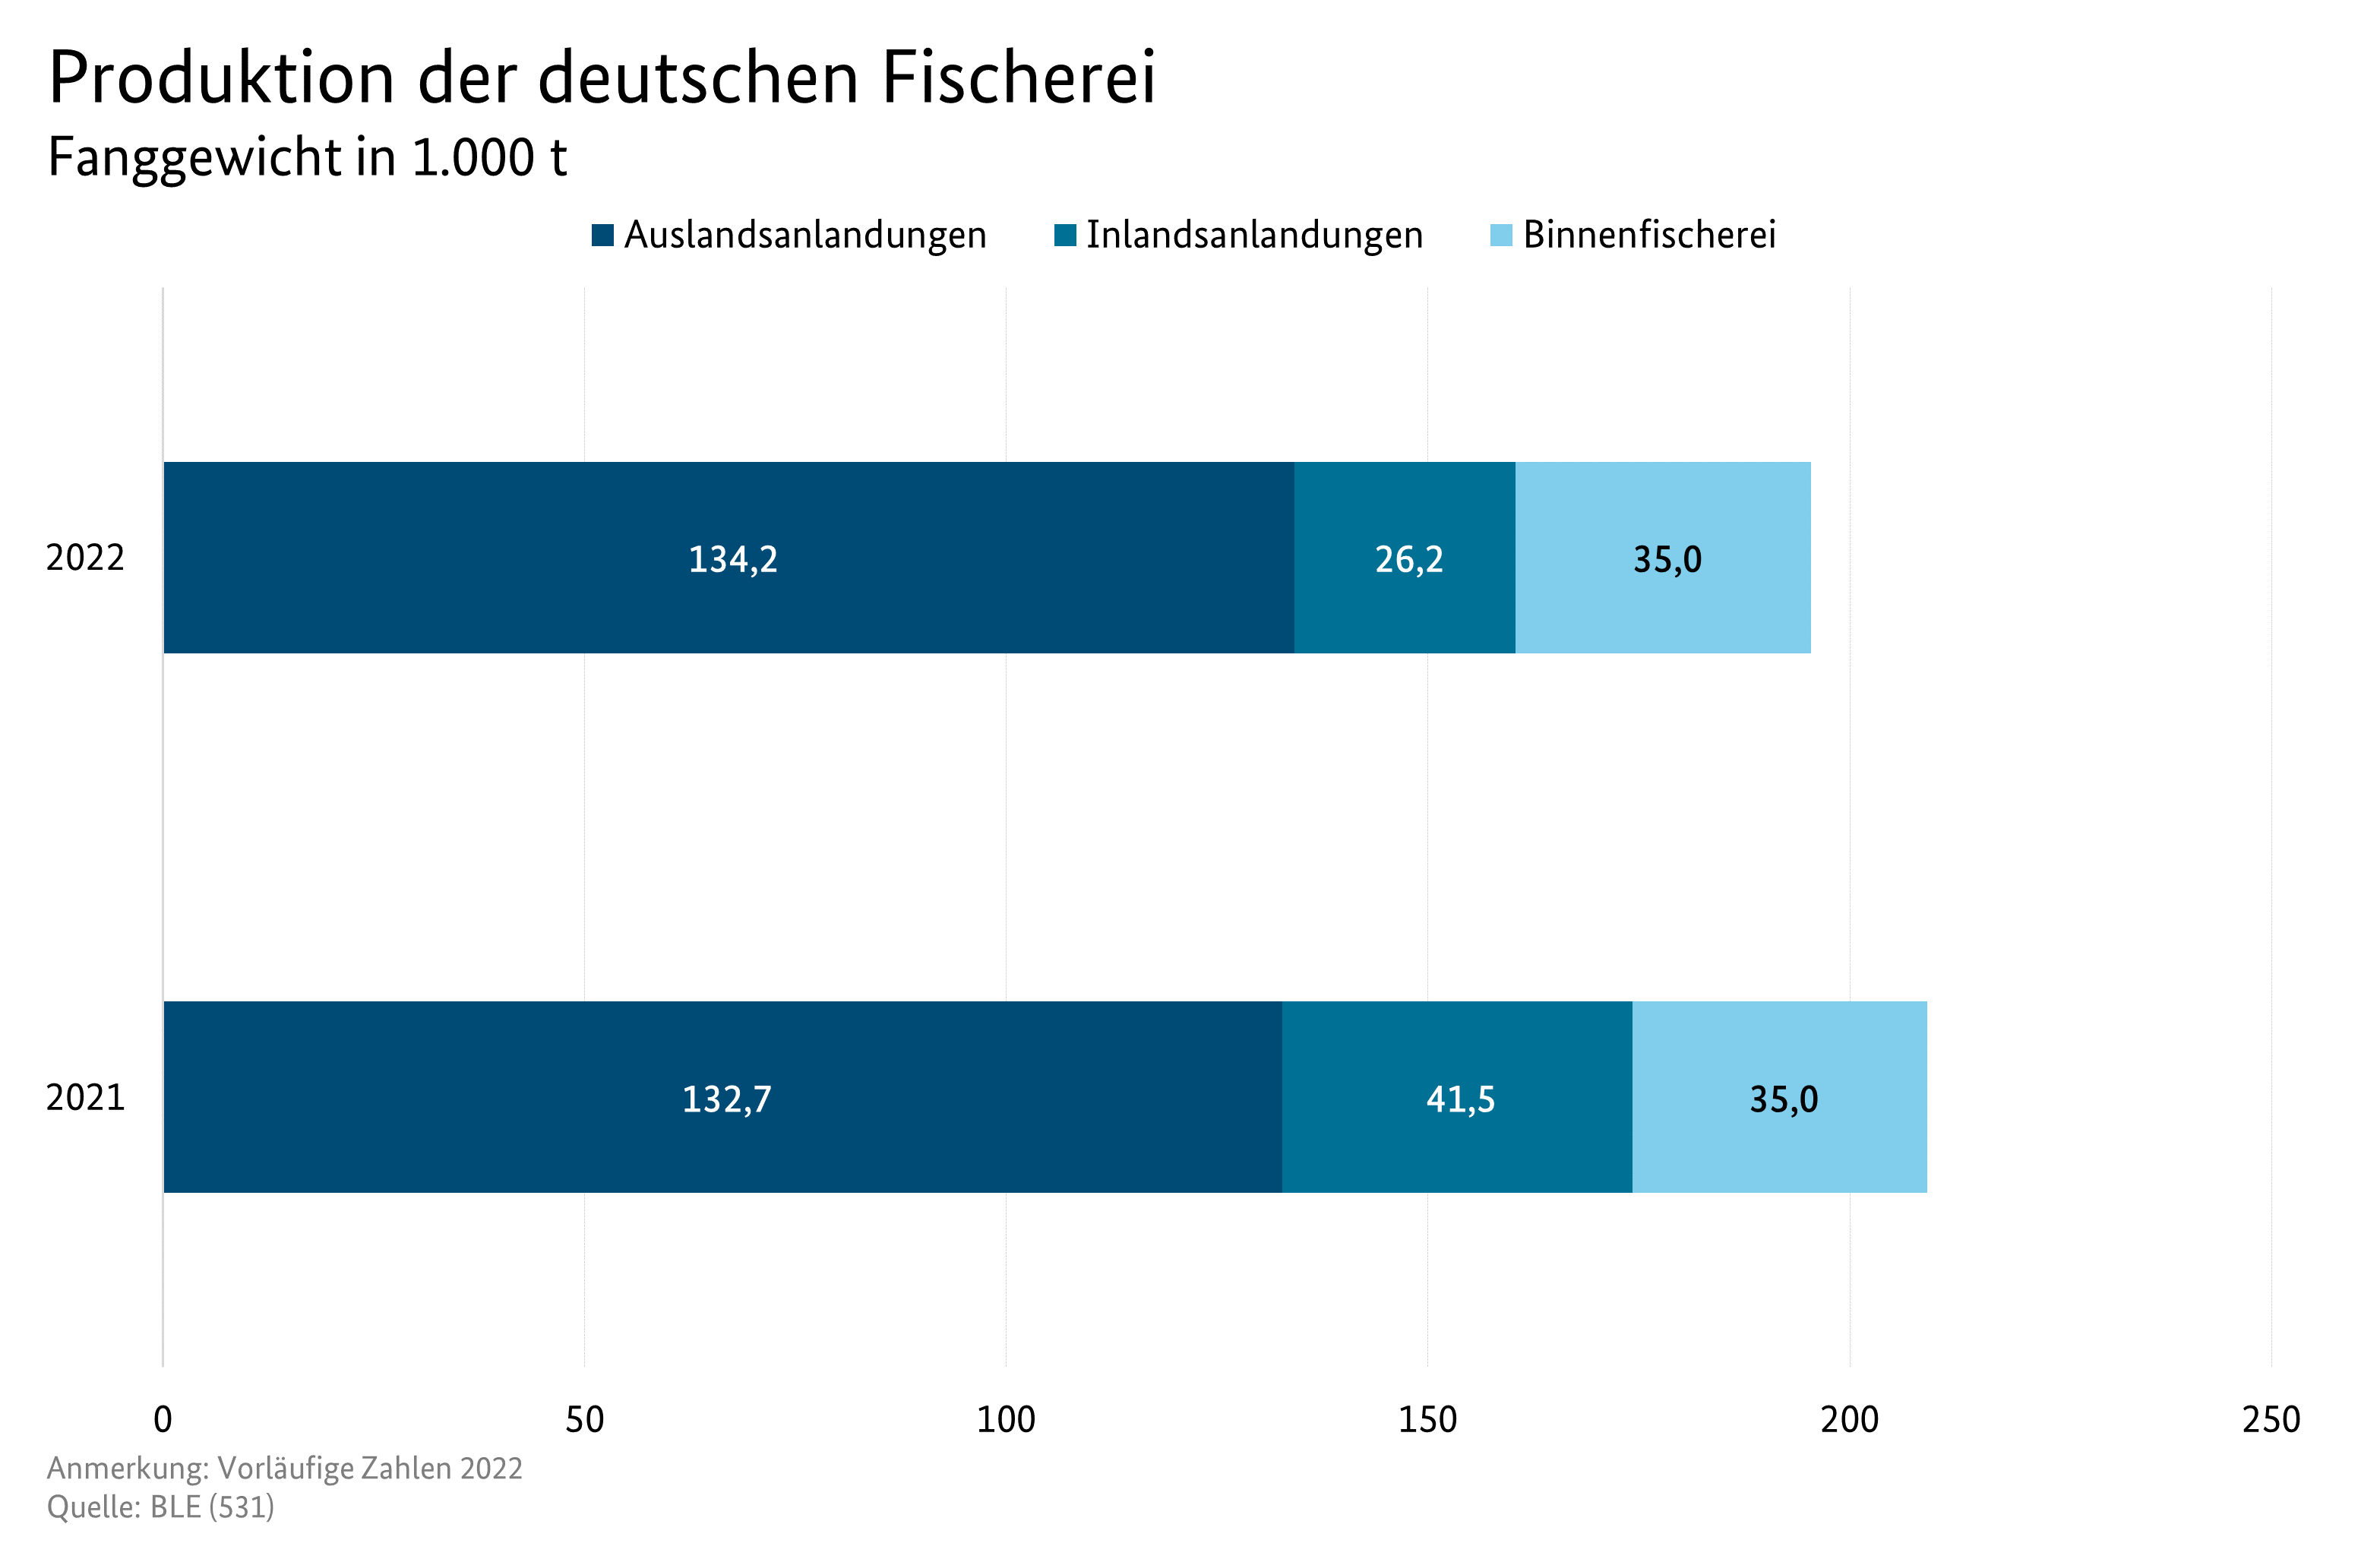 Balkendiagramm veranschaulicht die Produktionsmenge in Fanggewicht der deutschen Fischerei für die Jahre 2021 und 2022. Datenursprung ist die Tabelle Versorgungsbilanz Fisch ab 2010.